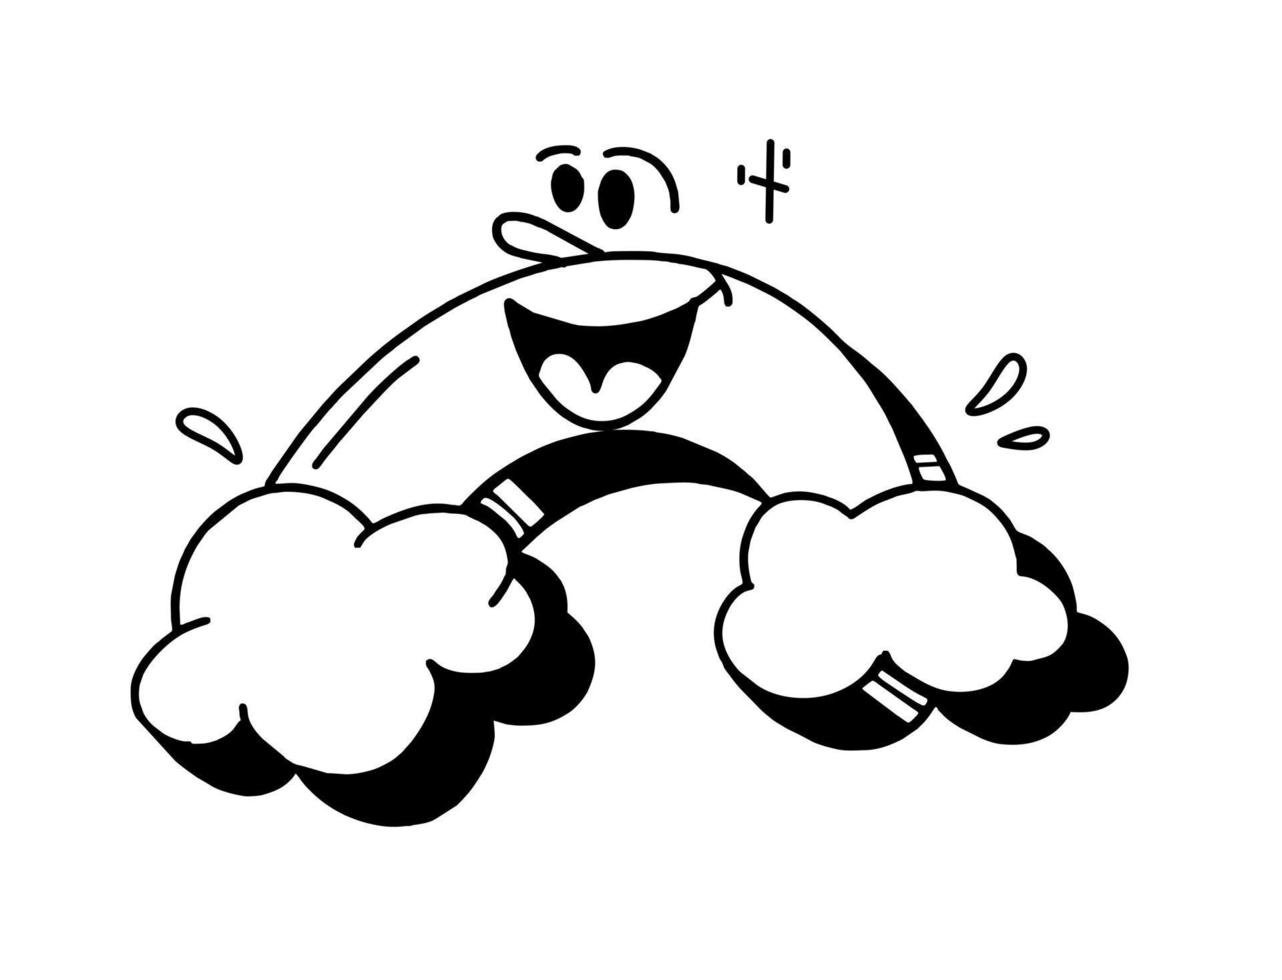 cloud är en retroseriefigur från 30-talet. vintage komiskt leende vektorillustration vektor